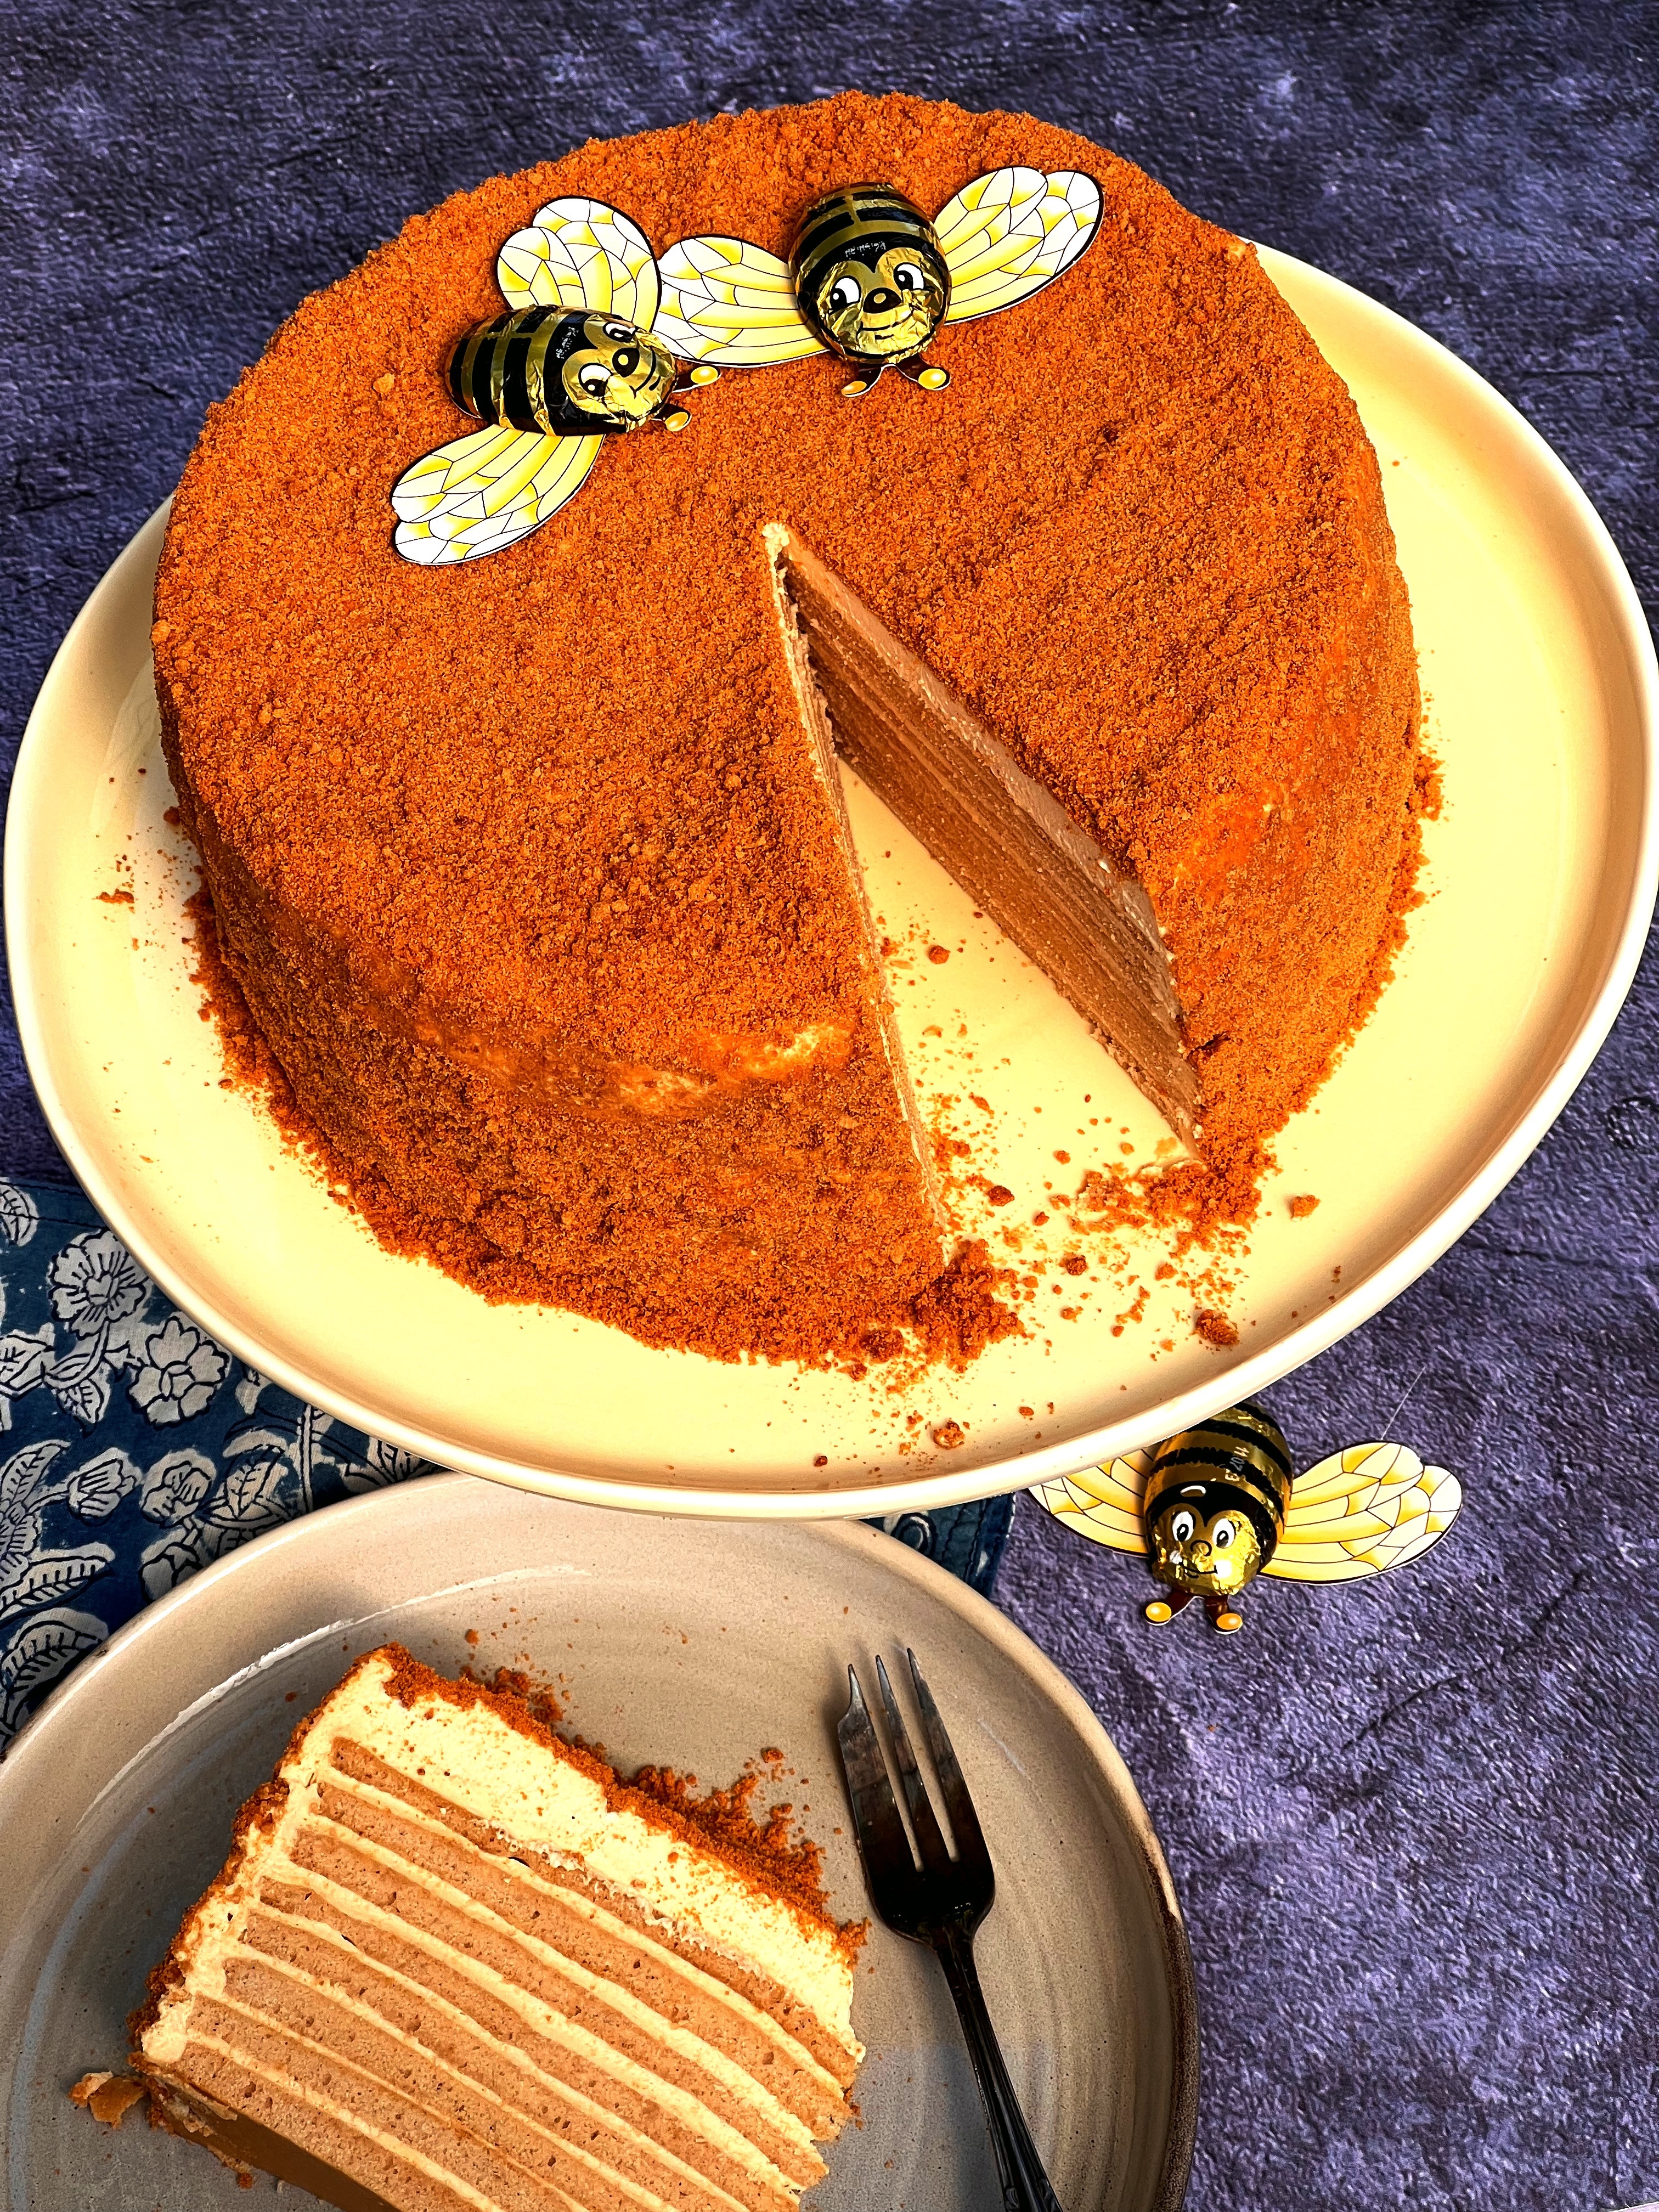 Honey Special Cake - KOTTAKKAL